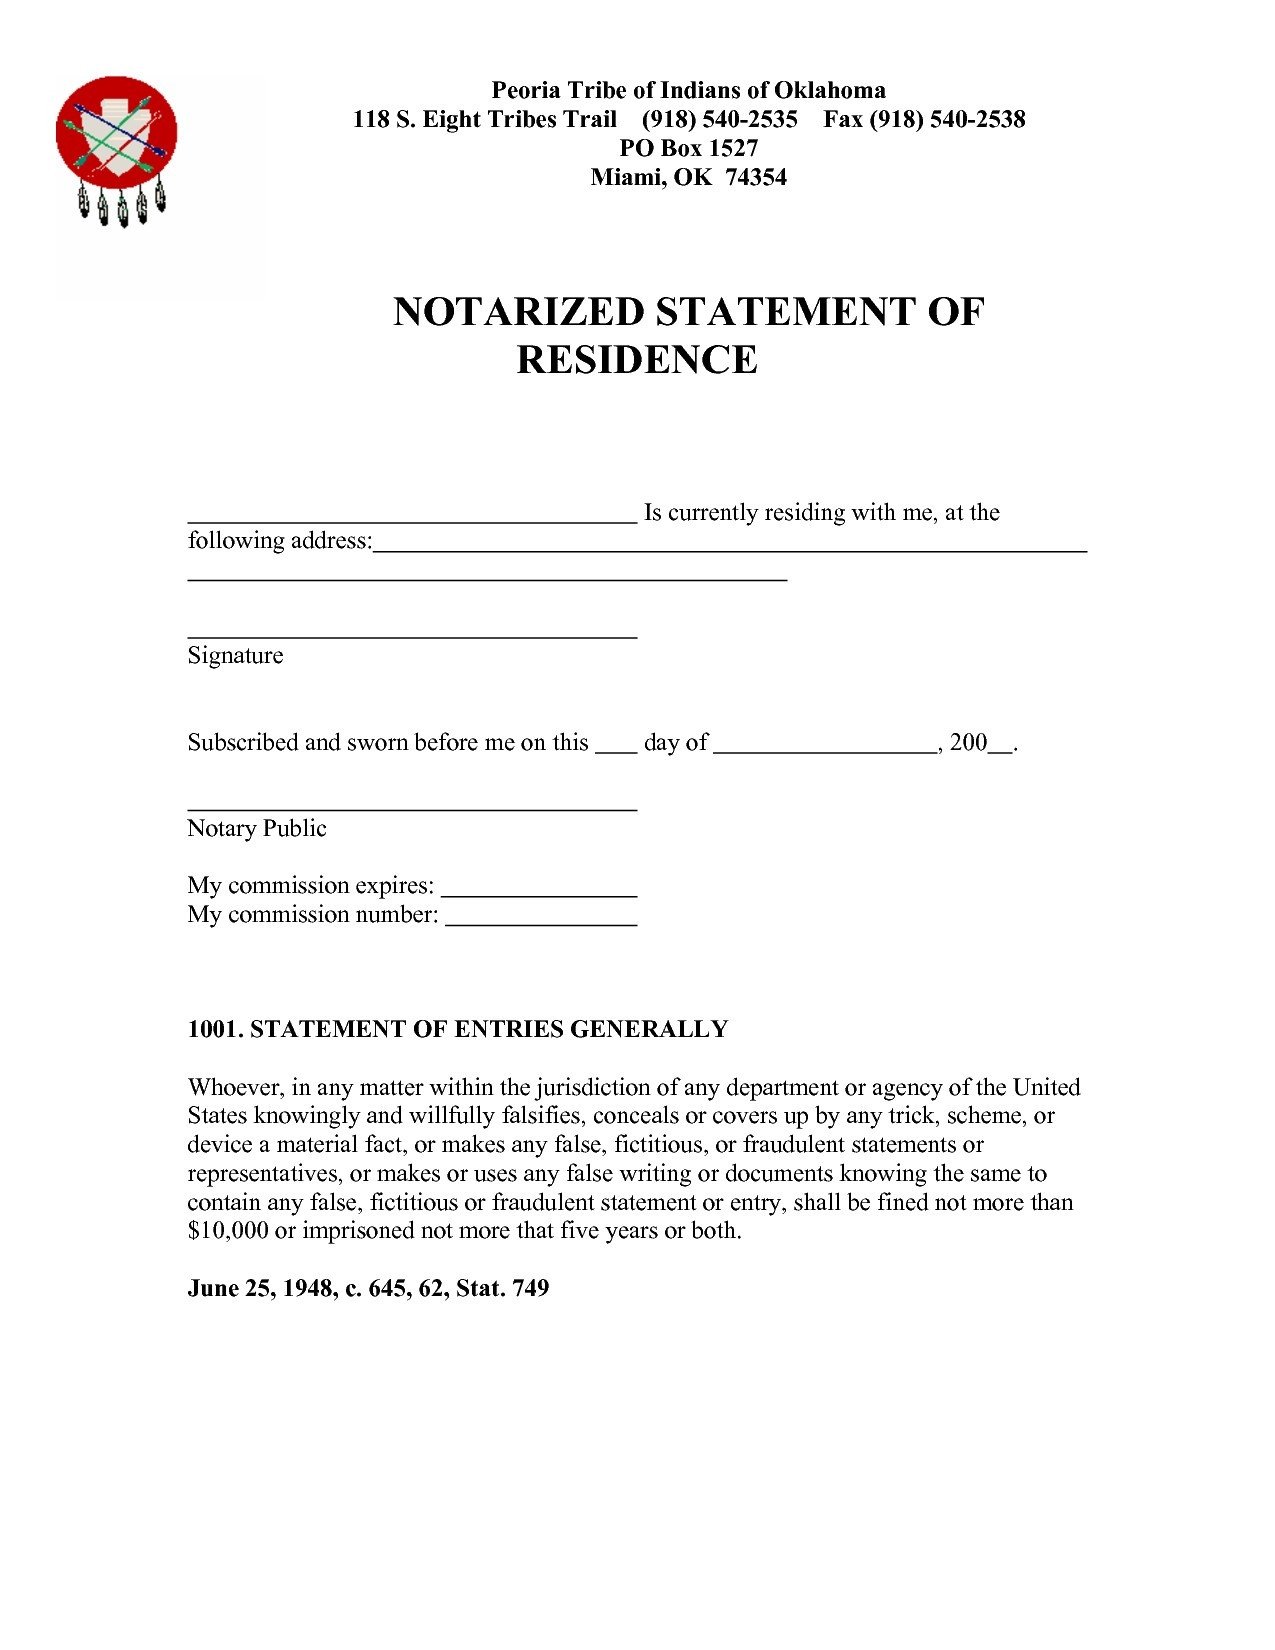 Notarized Proof Residency Letter Sample flowersheet